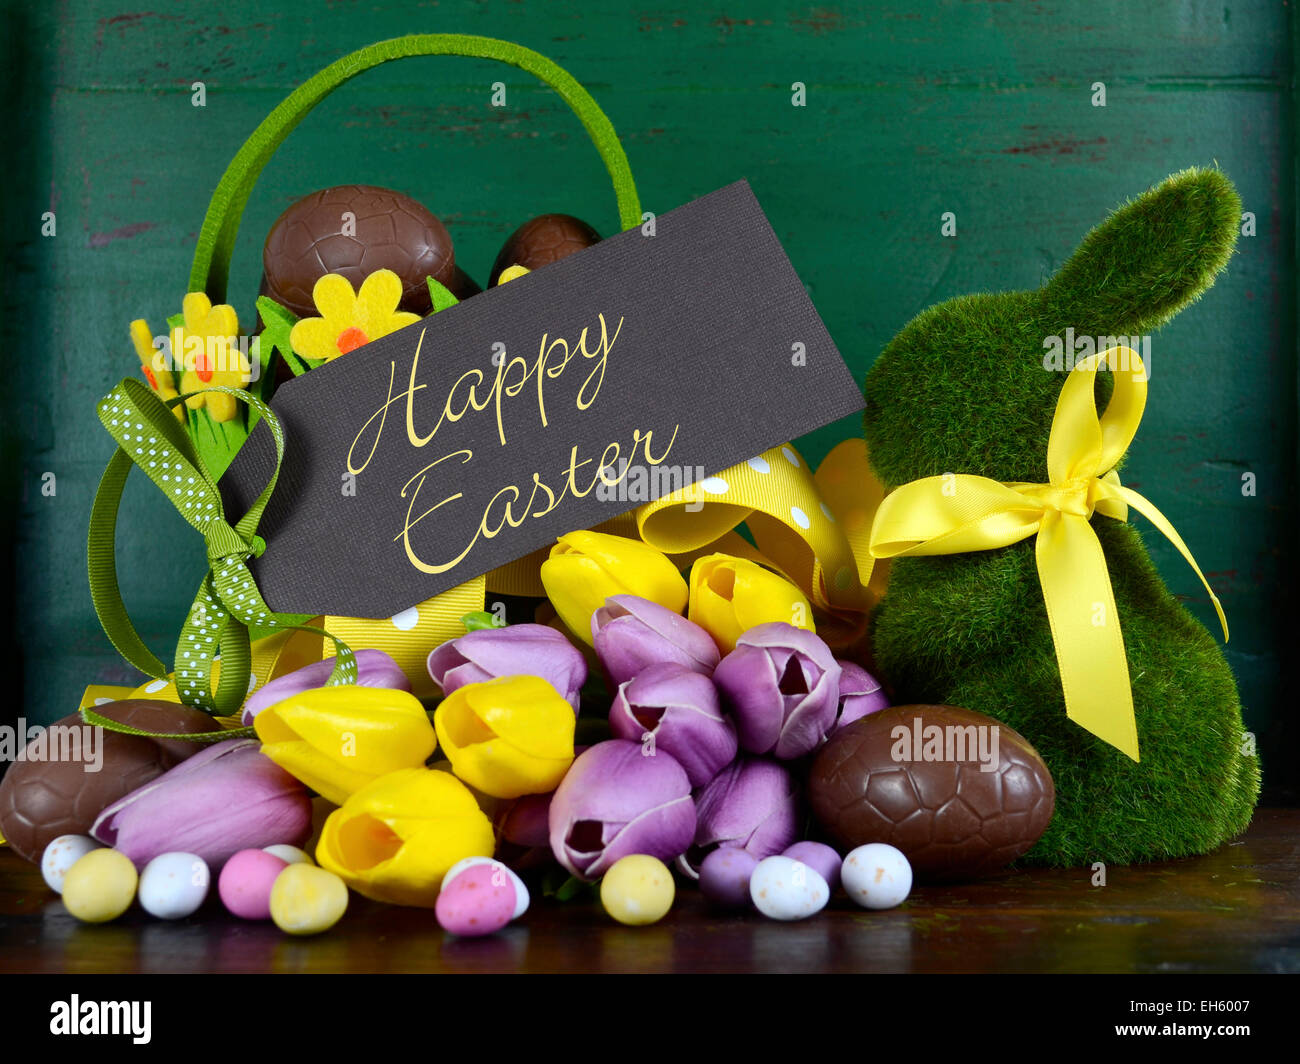 Felice Pasqua verde erba moss bunny coniglio con cesto di uova di cioccolato e tulipani a molla contro un legno verde dello sfondo. Foto Stock